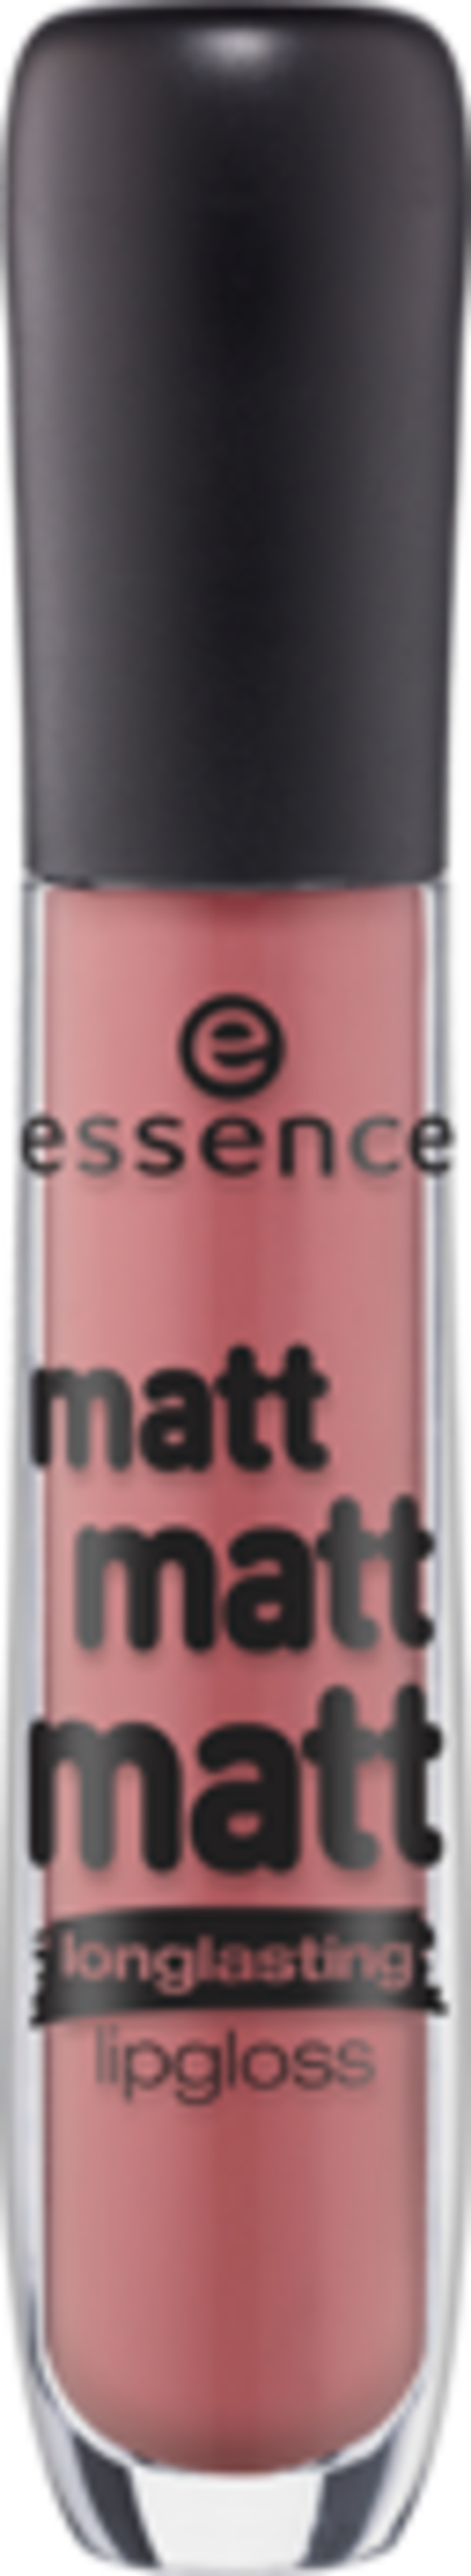 Блеск для губ matt matt matt. Essence Matt блеск. Блеск Essense Matt Matt. Essence блеск Matt Matt Matt. Essence Matt Matt Matt.